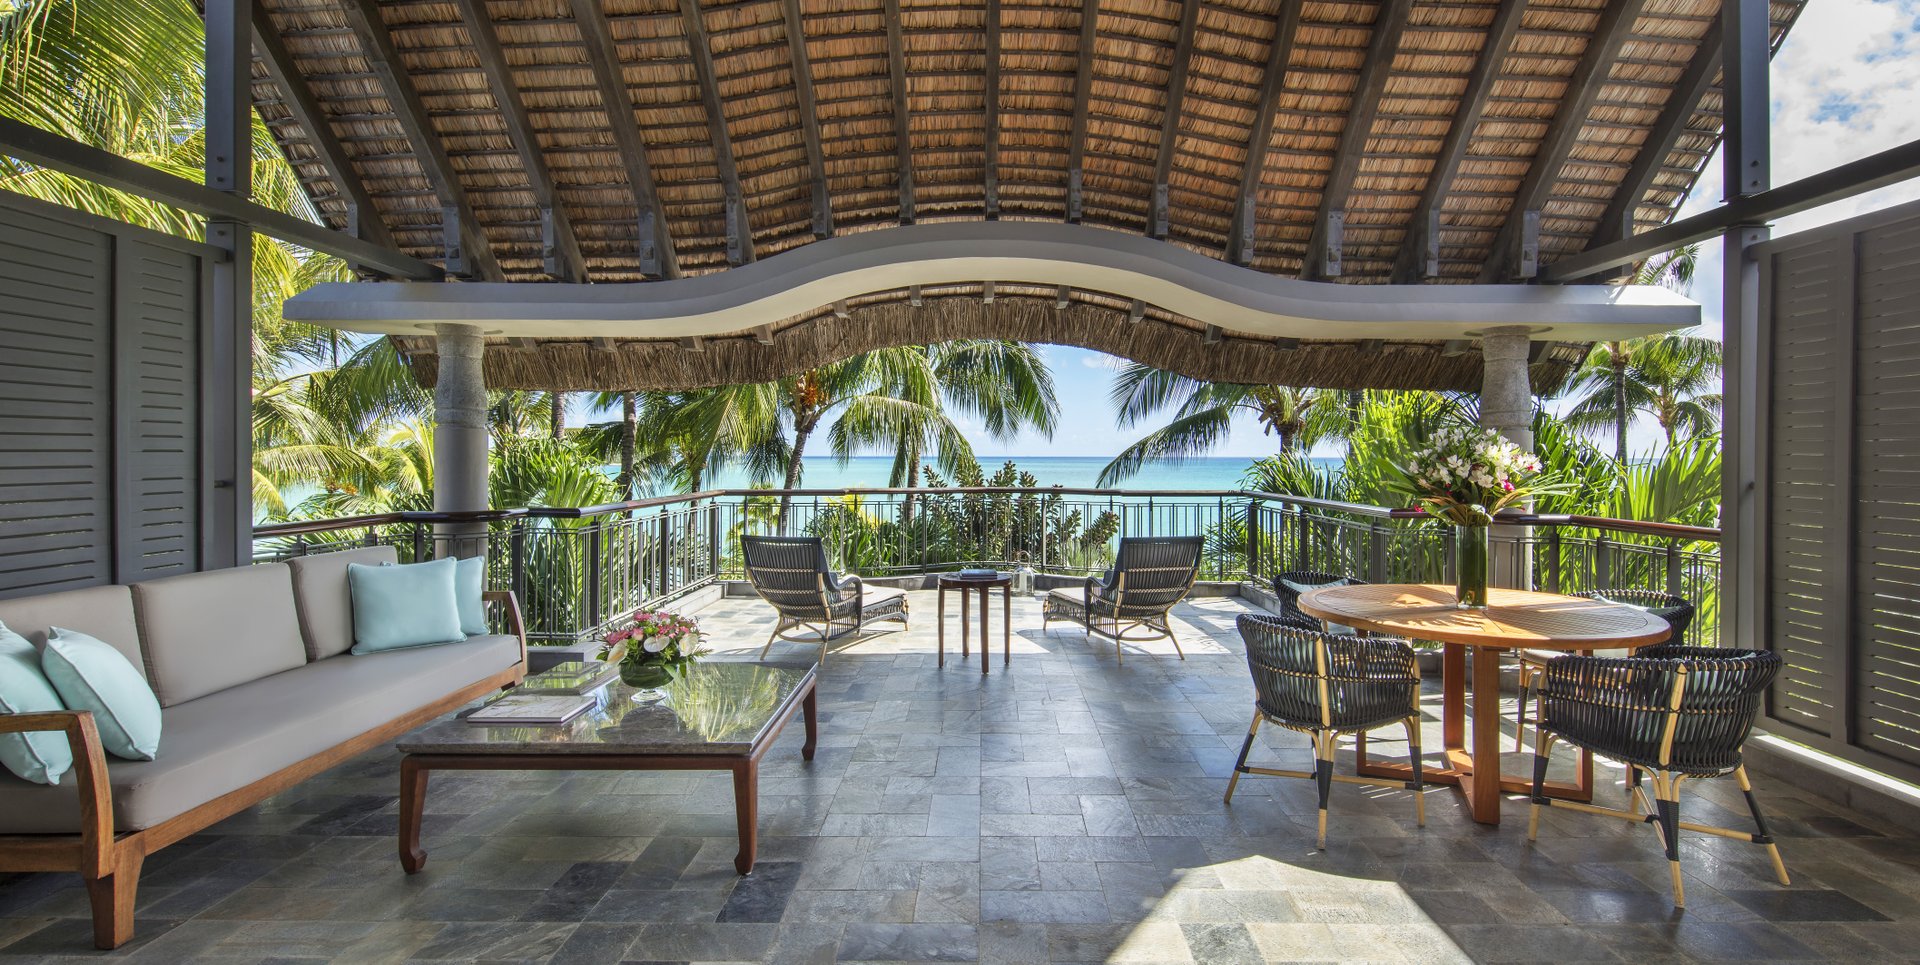 З власного балкона або тераси відкривається чудовий краєвид на тропічний сад і океан.